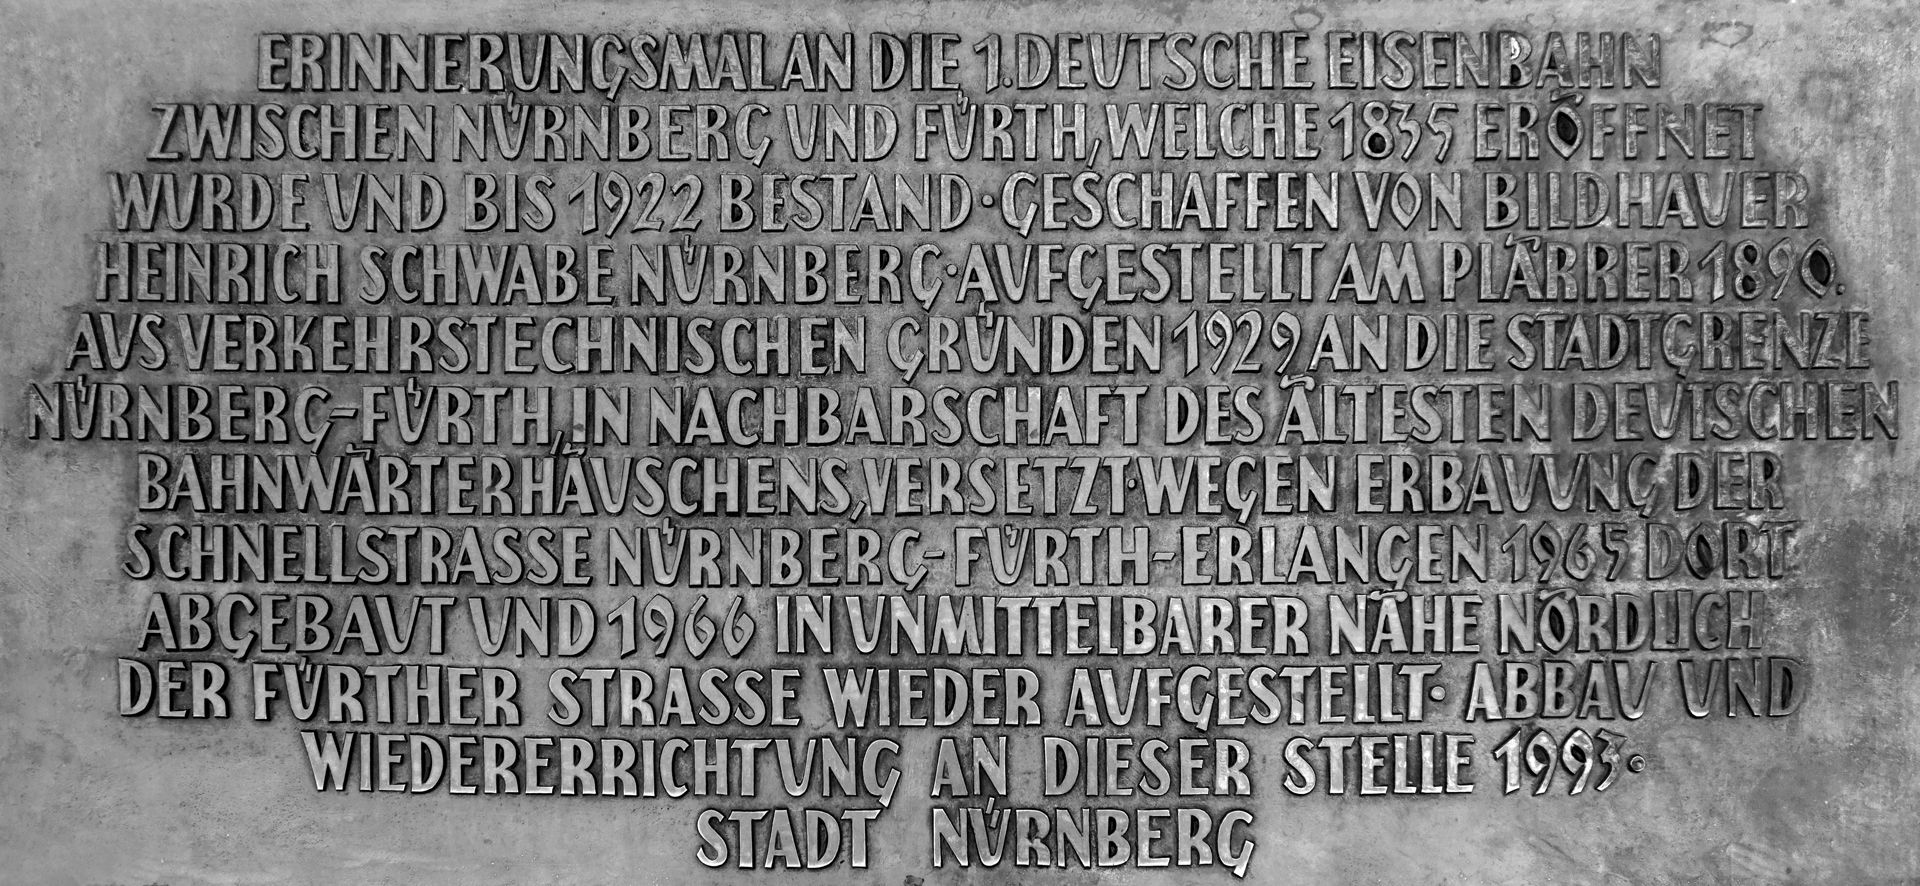 Ludwigseisenbahn-Denkmal Auf dem Pultstein Inschrift der Stadt Nürnberg